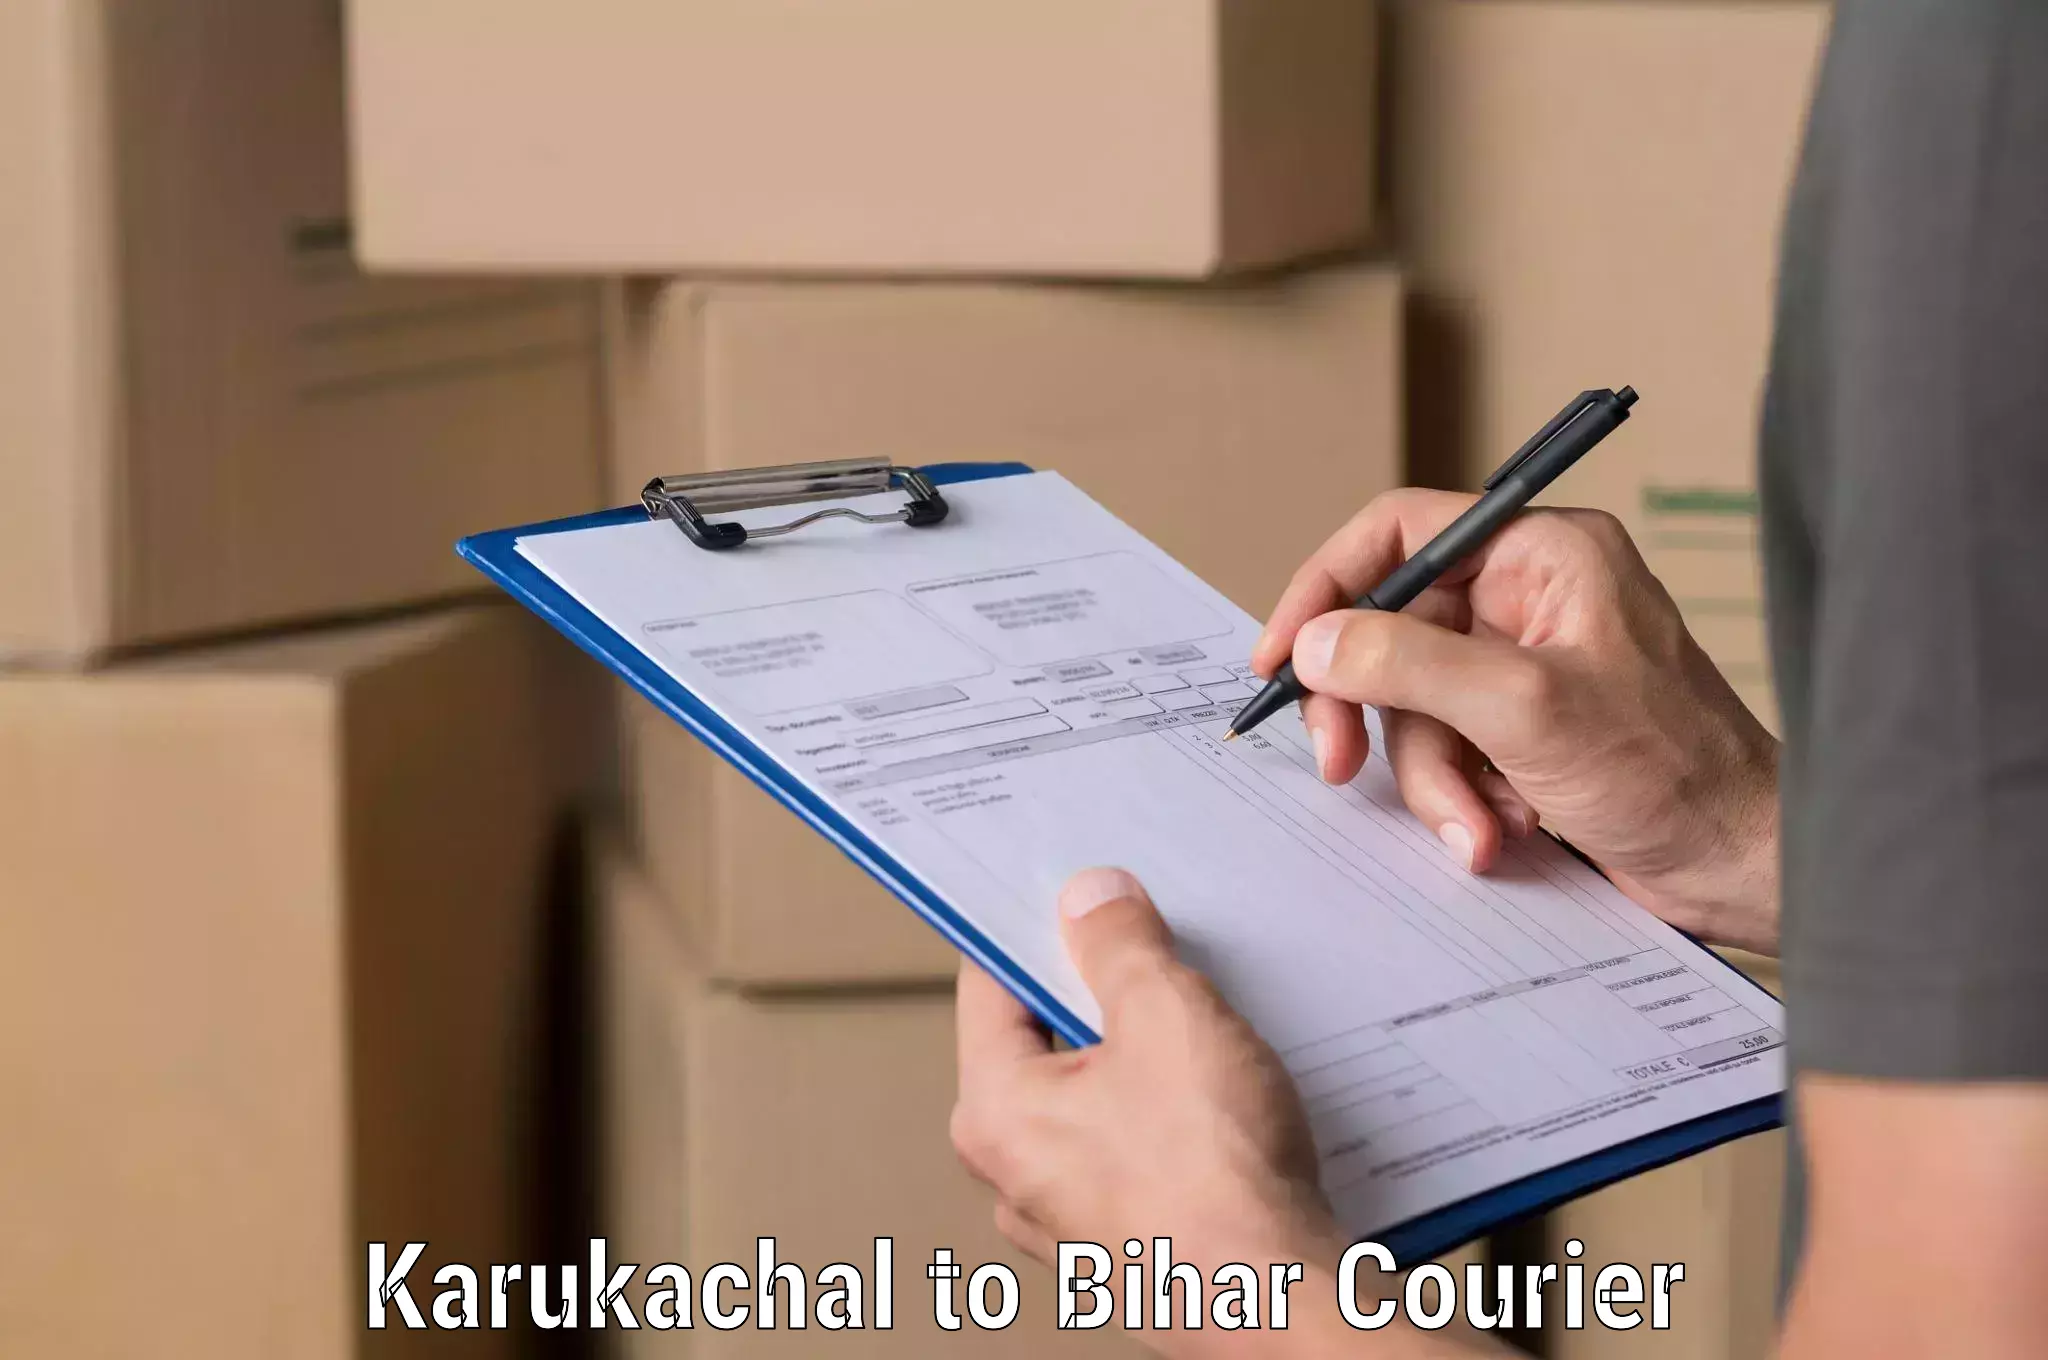 Express logistics providers Karukachal to Amba Kutumba